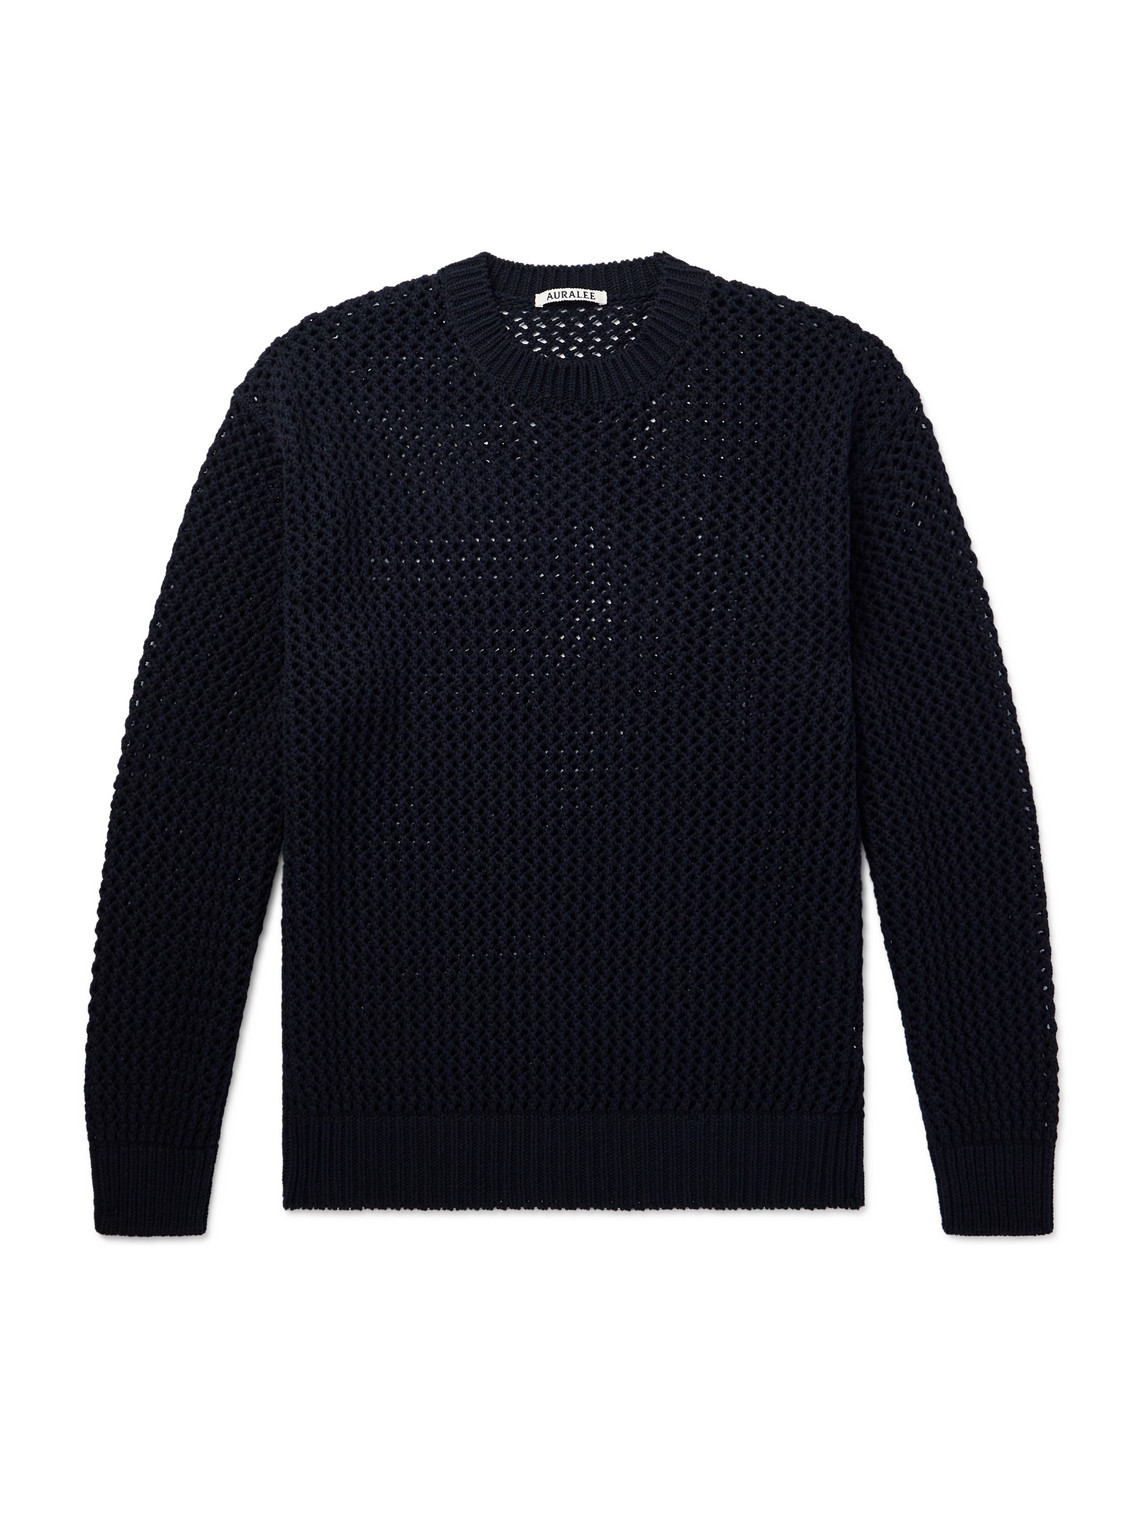 Auralee Open-knit Cotton Jumper In Black